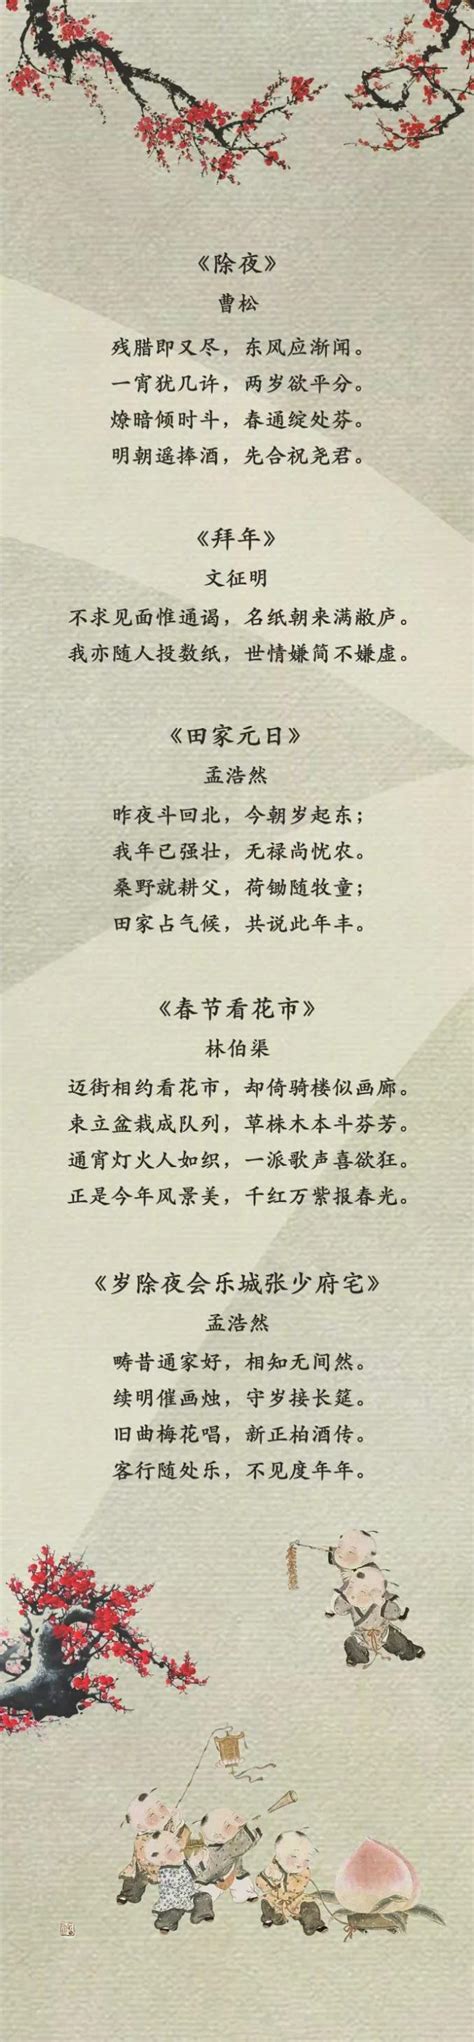 春节诗歌